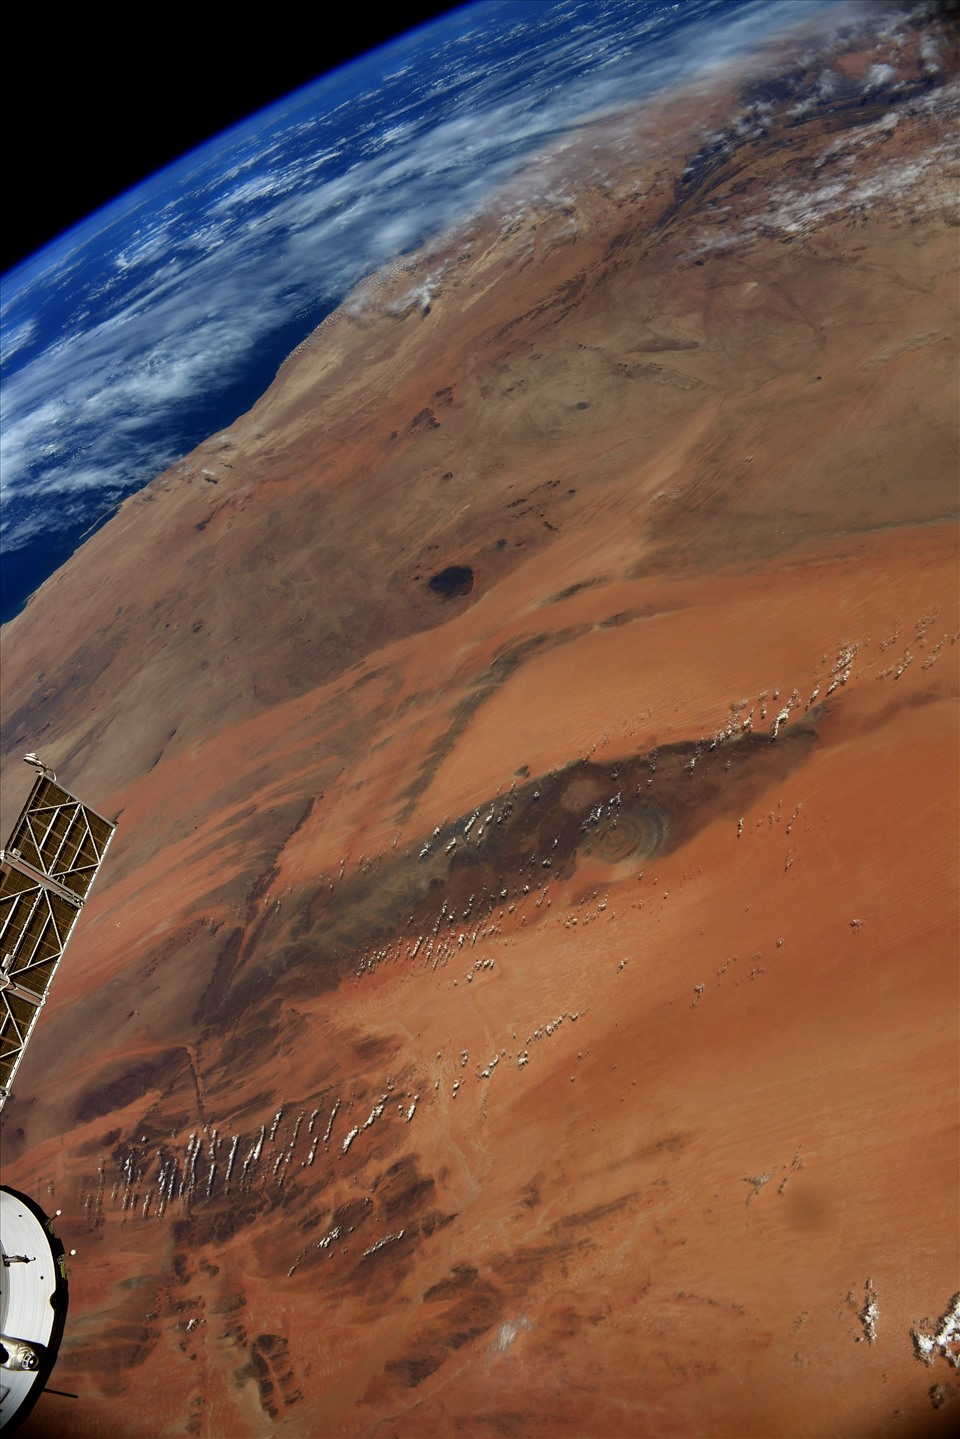 Sửng sốt ảnh Trái đất giống như sao Hỏa chụp từ ISS